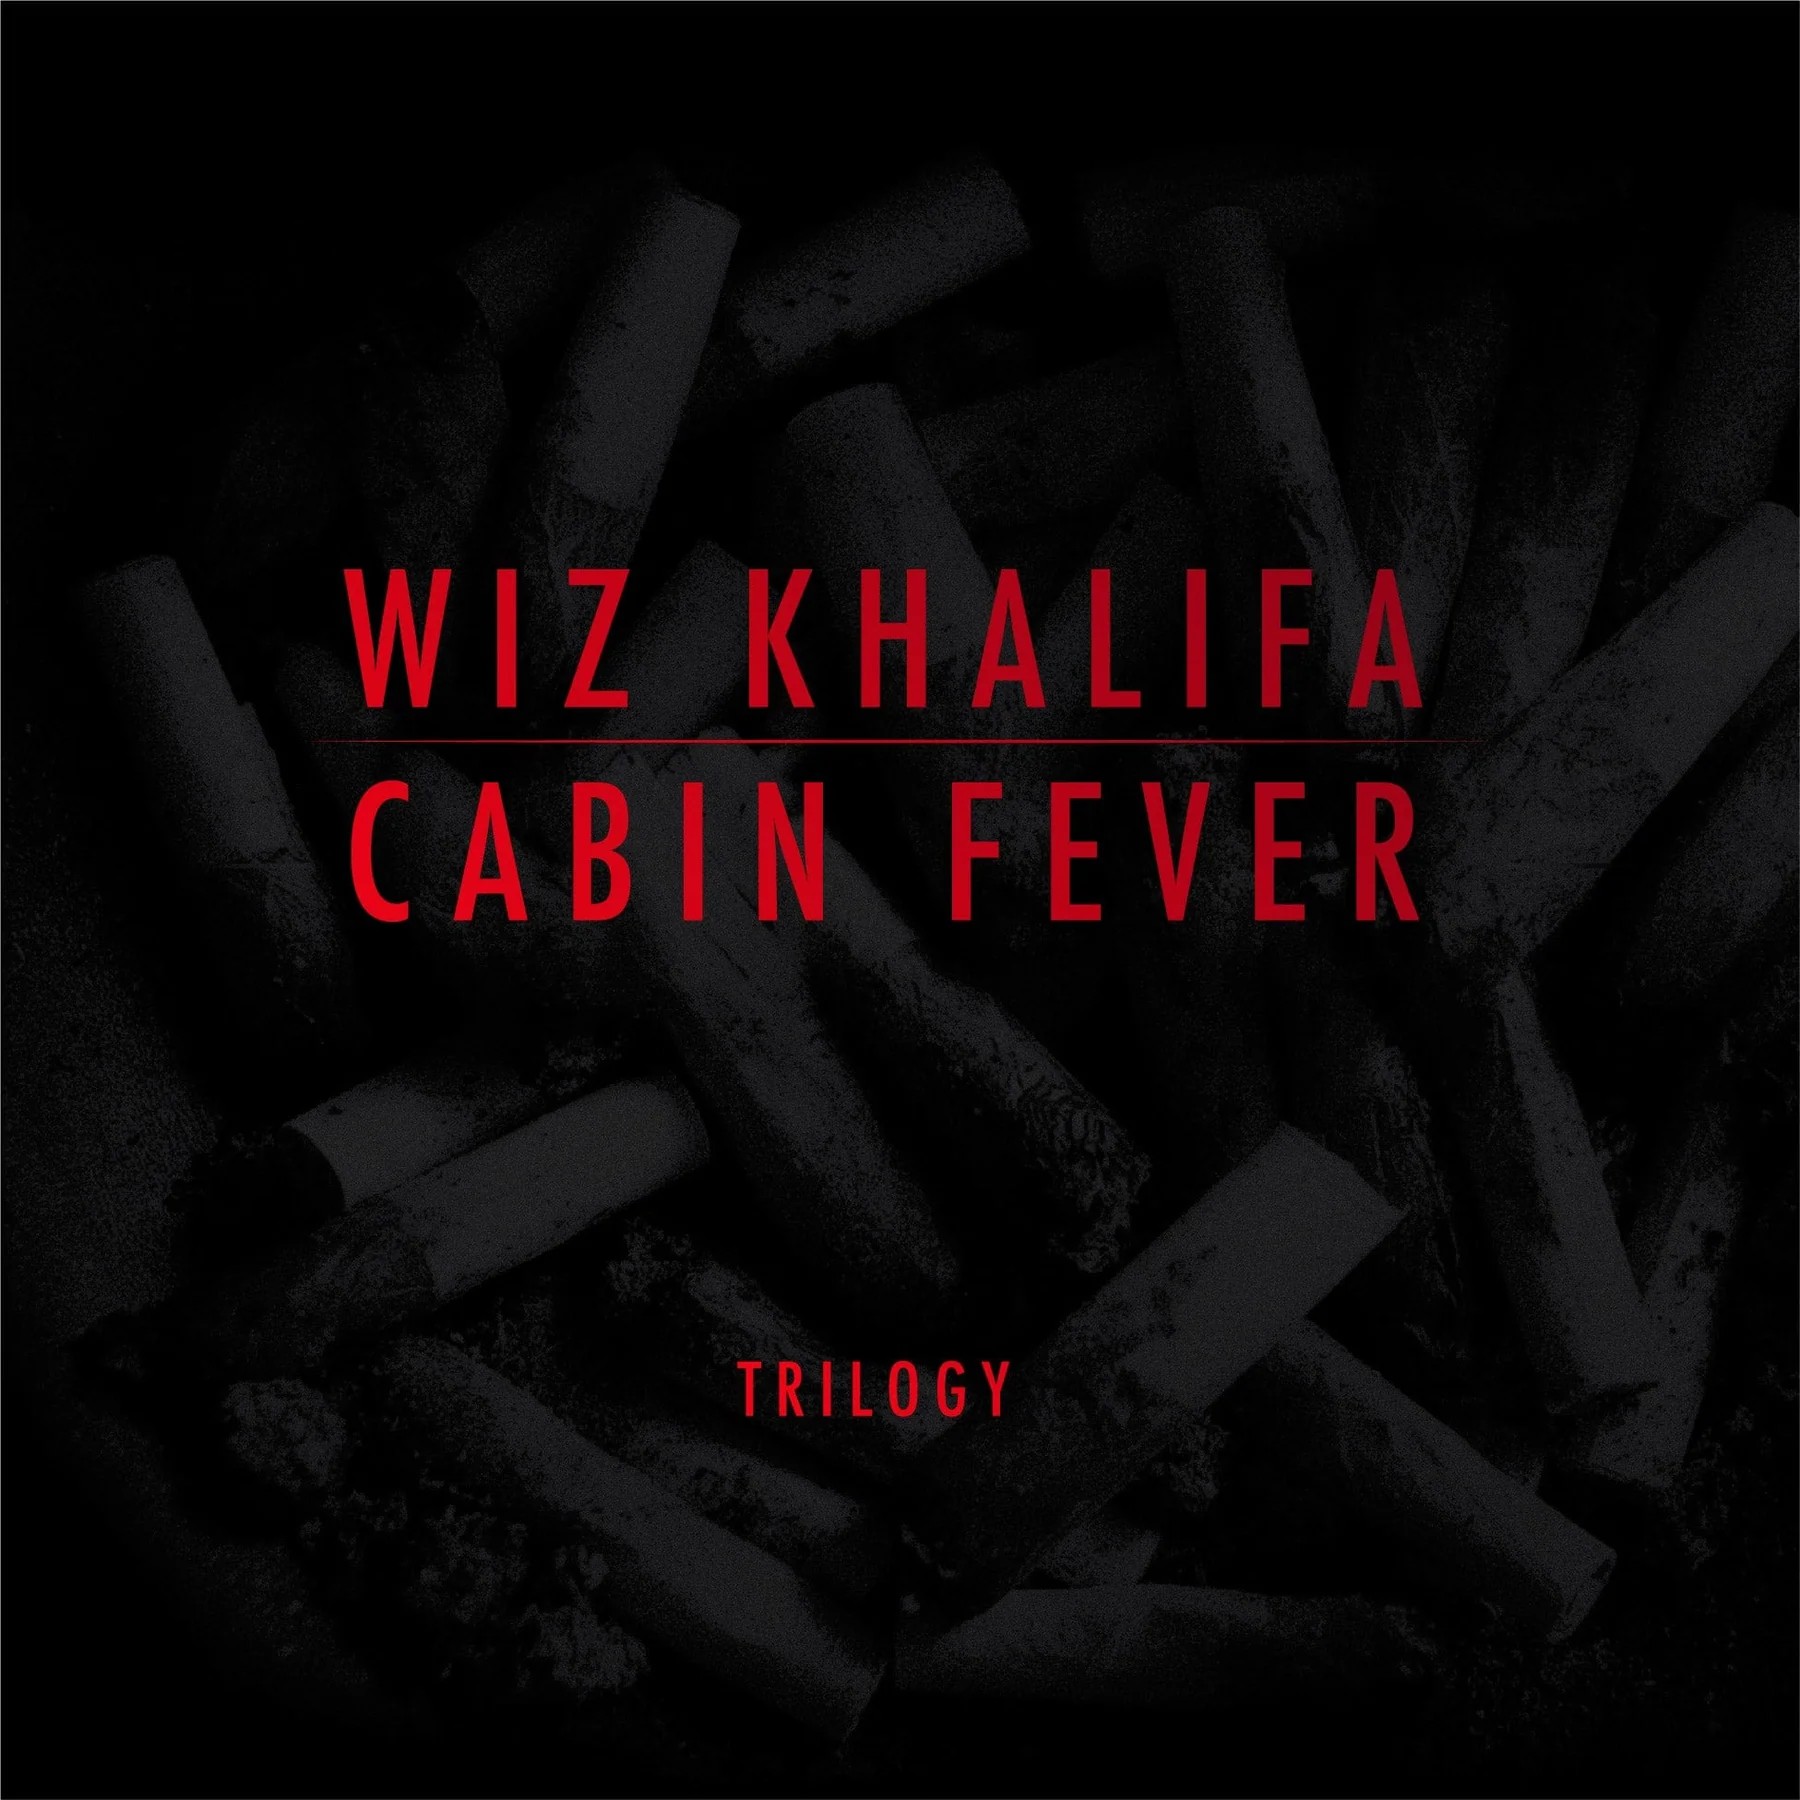 Wiz Khalifa 'Cabin Fever' Trilogy album artwork